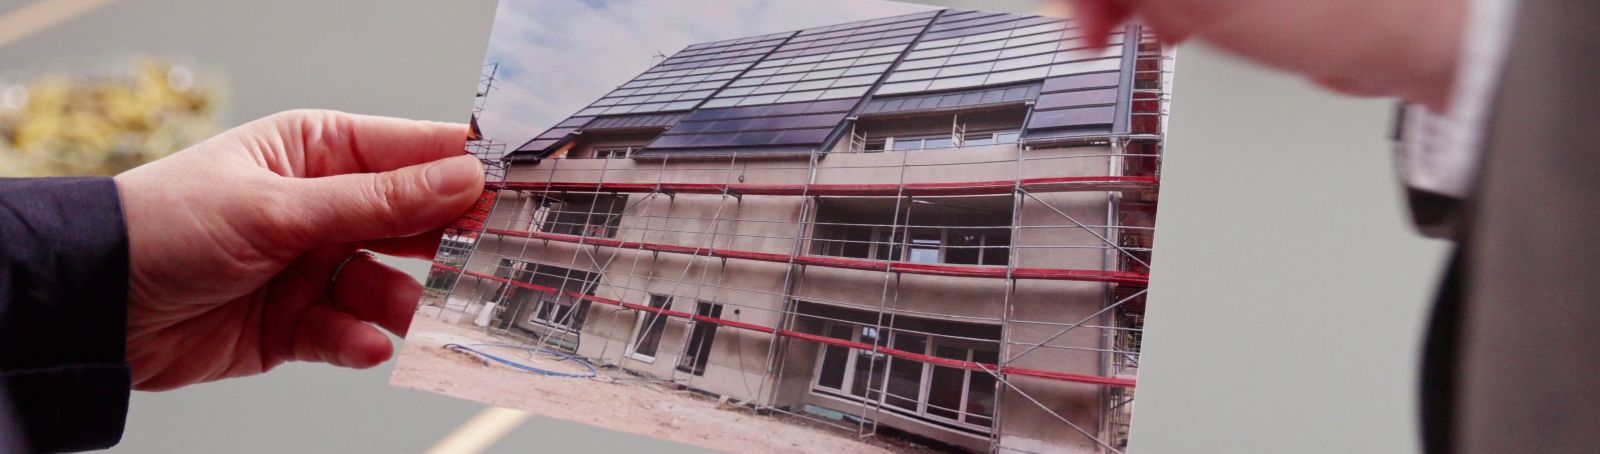 Im Projekt Eversol-MFH haben Forschende zwei privatwirtschaftlich gebaute, solare und teilautarke Mehrfamilienhäuser vermessen und hinsichtlich der Energieflüsse analysiert.